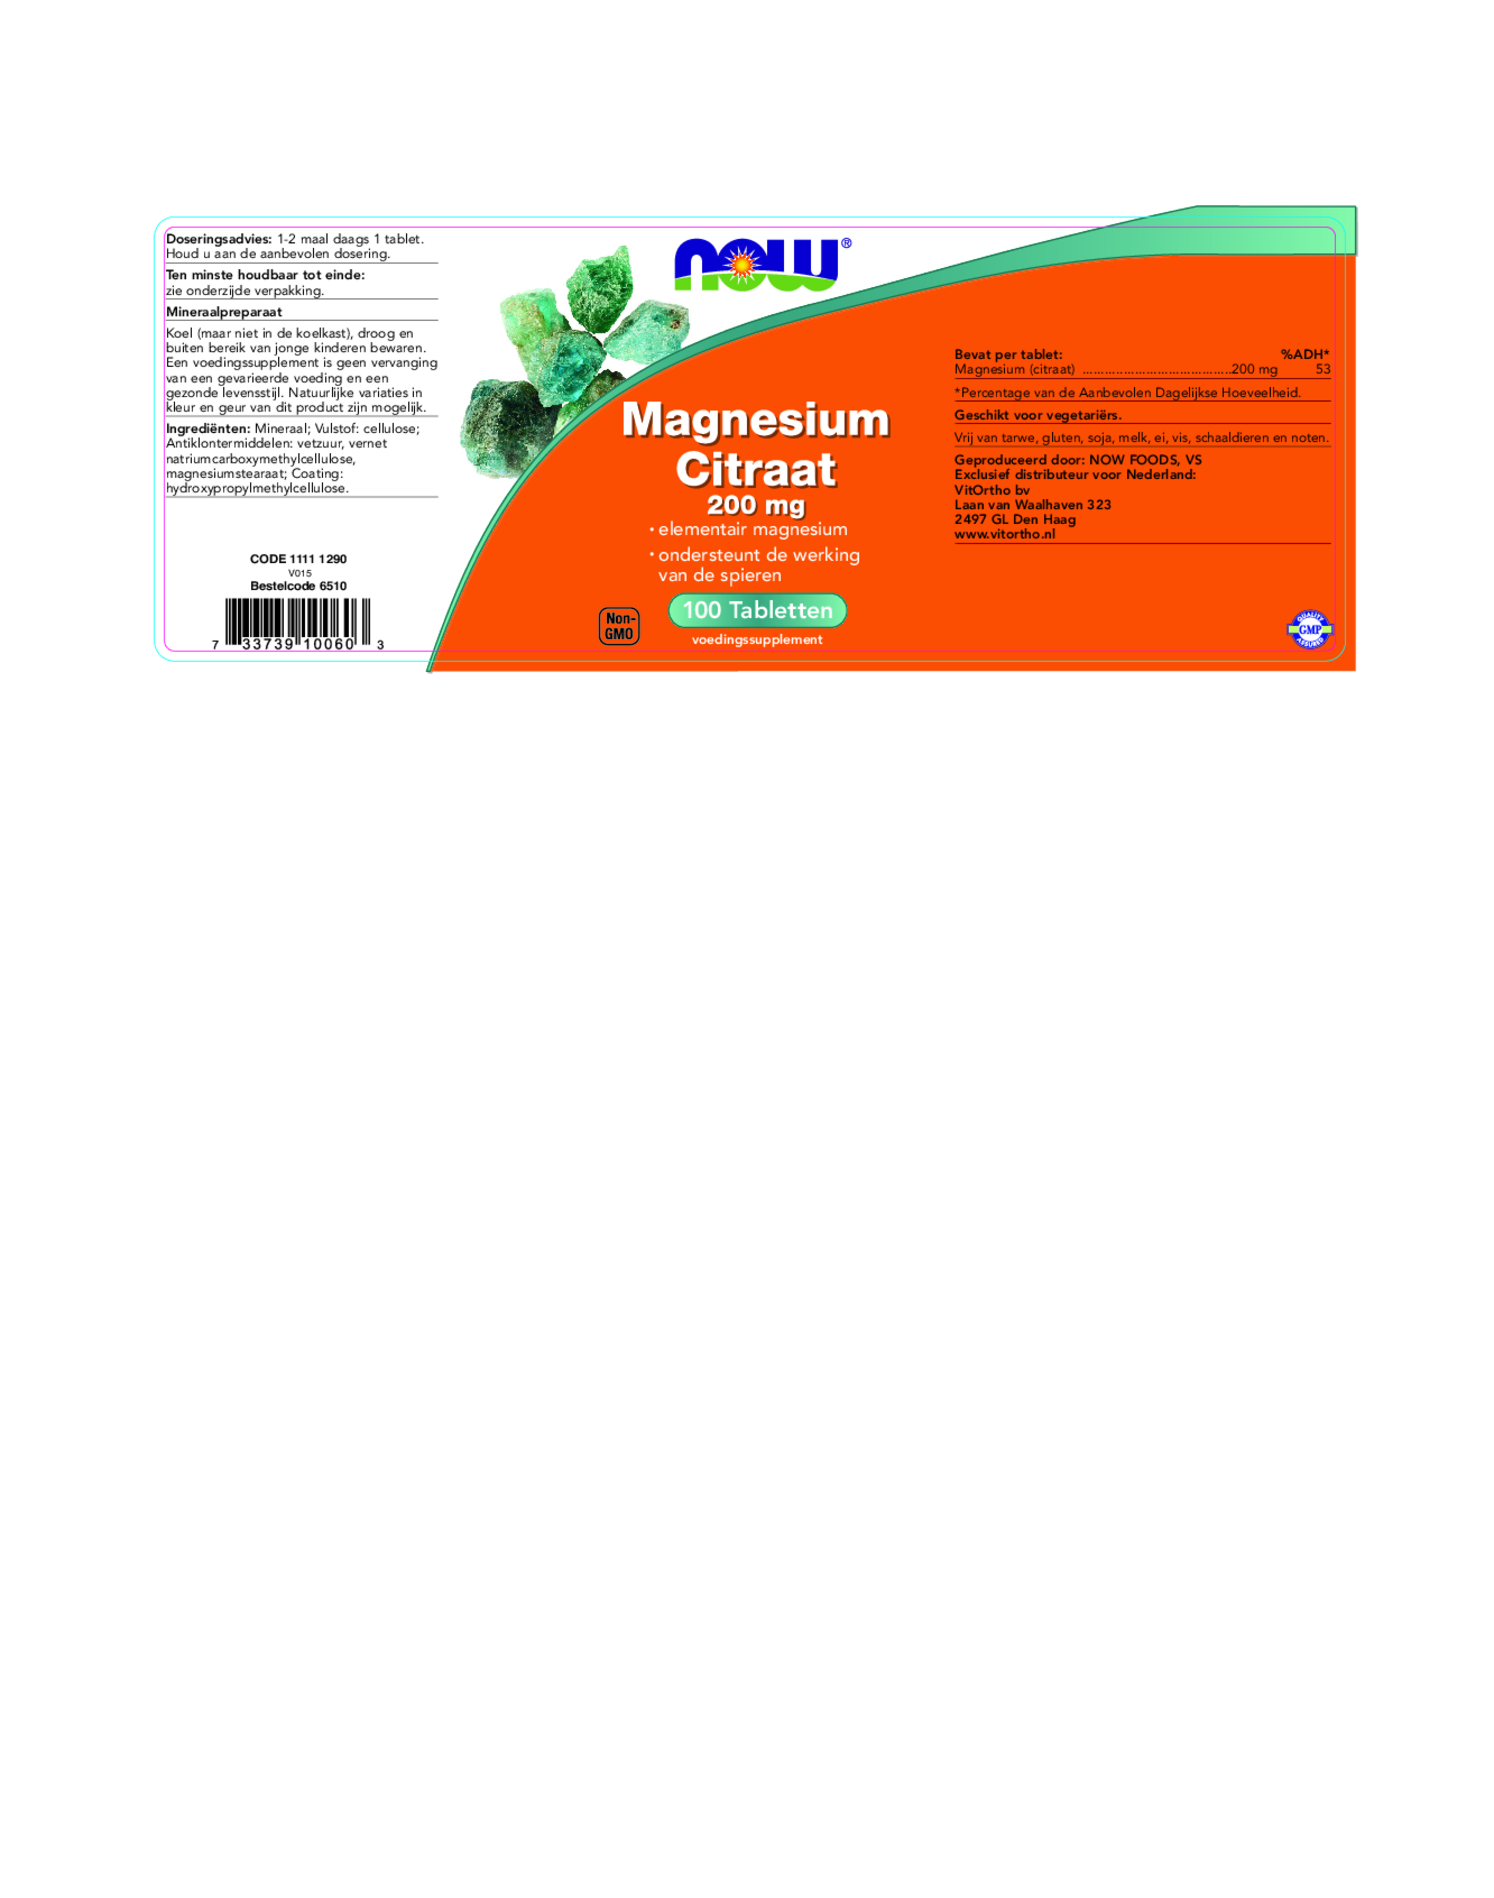 Magnesium Citraat 200mg Tabletten afbeelding van document #1, etiket